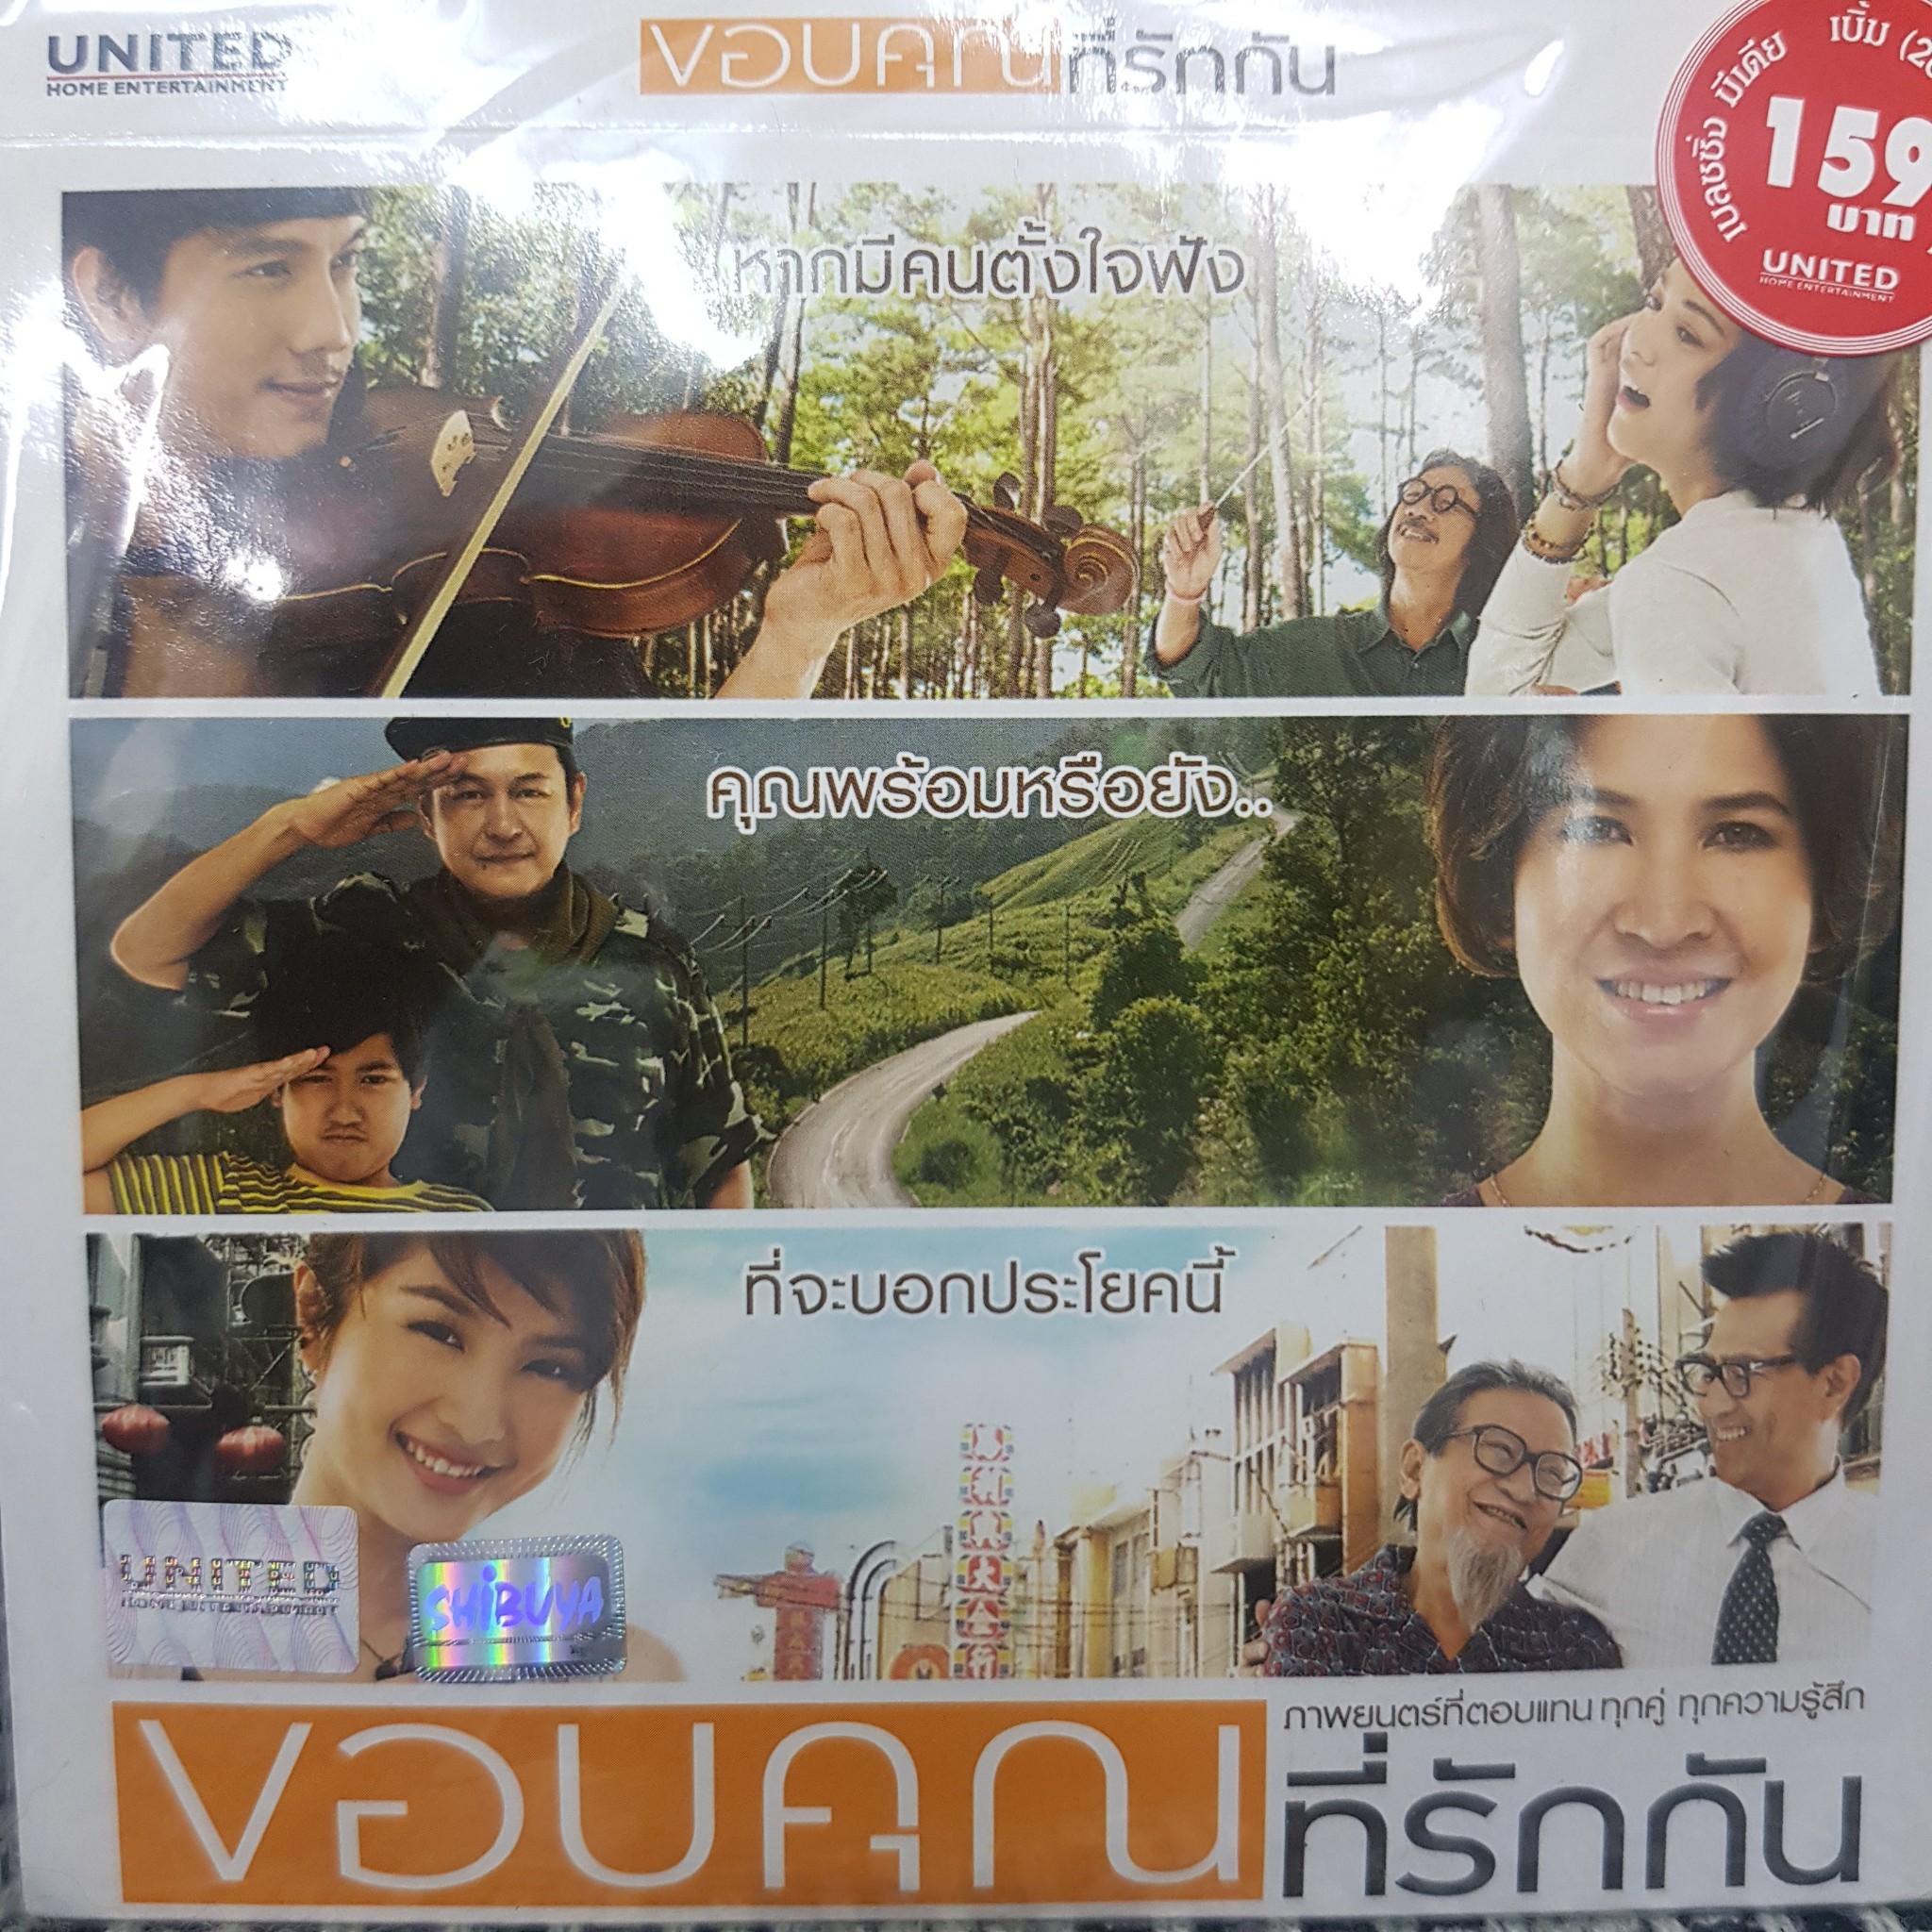 VCDหนัง ขอบคุณที่รักกัน พากย์ไทย (SBYVCD2020-ขอบคุณที่รักกัน) โรแมนติก แผ่นหนัง สะสม หนังโรงภาพยนตร์ ภาพยนตร์ หนังไทยเก่า หนัง งาน2020 cinema vcd วีซีดี STARMART